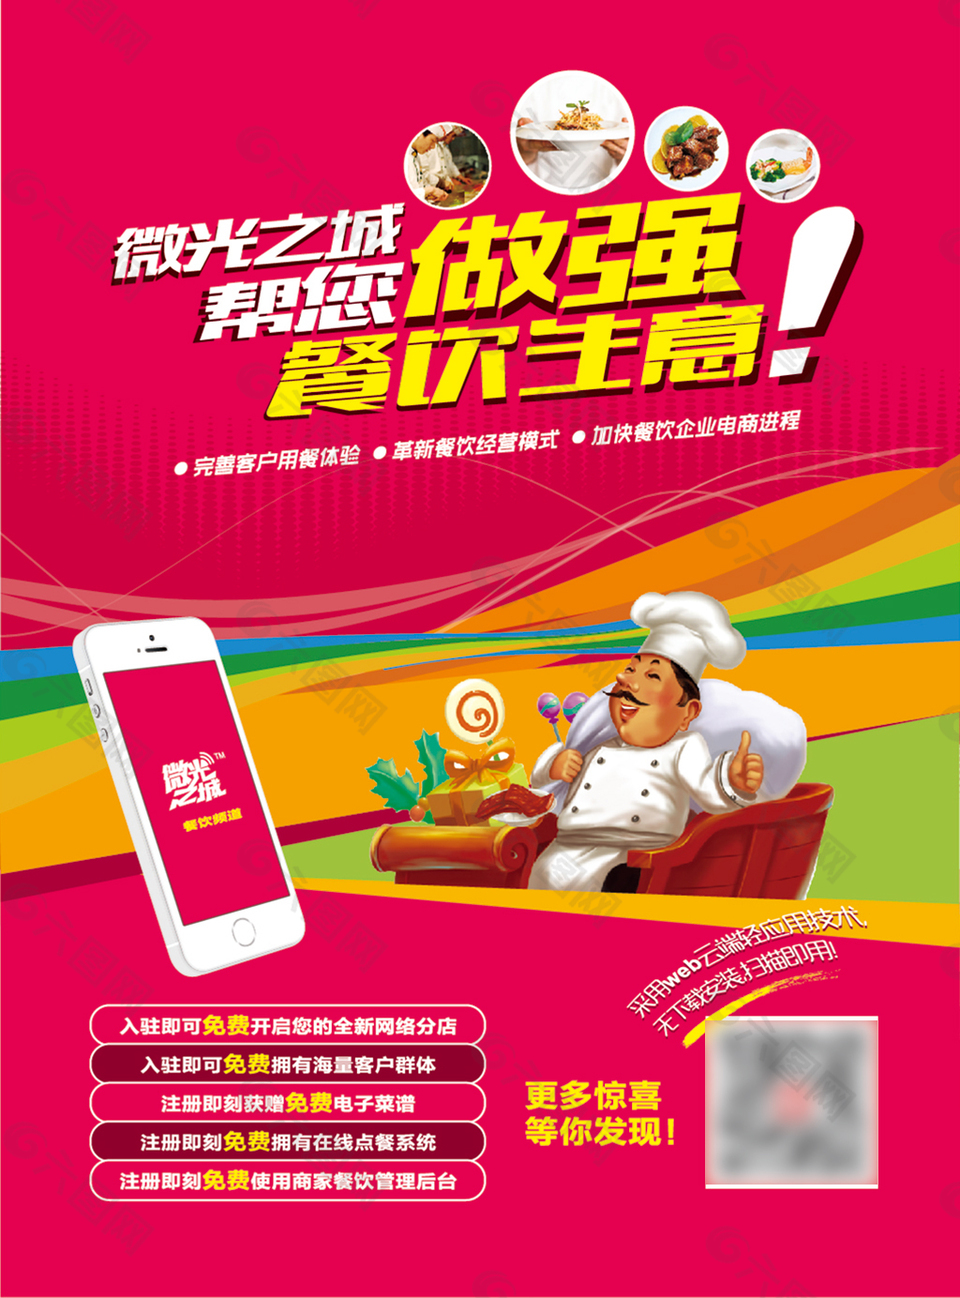 餐饮手机APP营销软件宣传广告ai素材